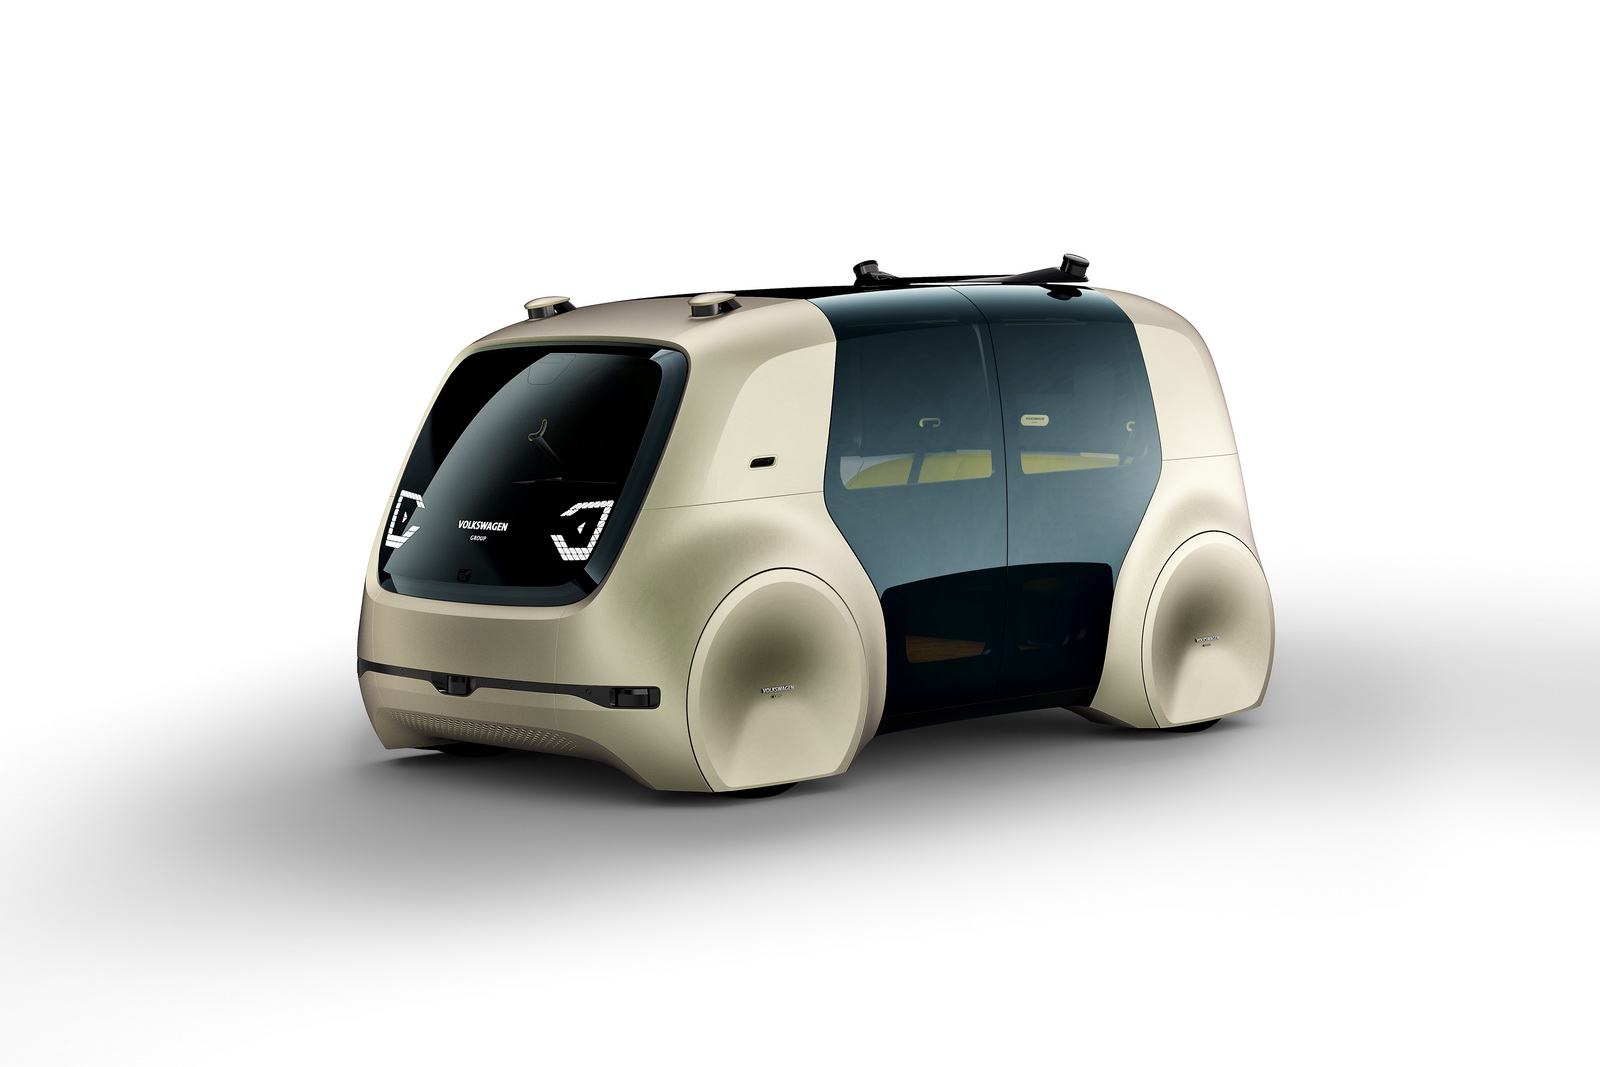 Volkswagen Group Sedric Concept, 2017 - Geneva